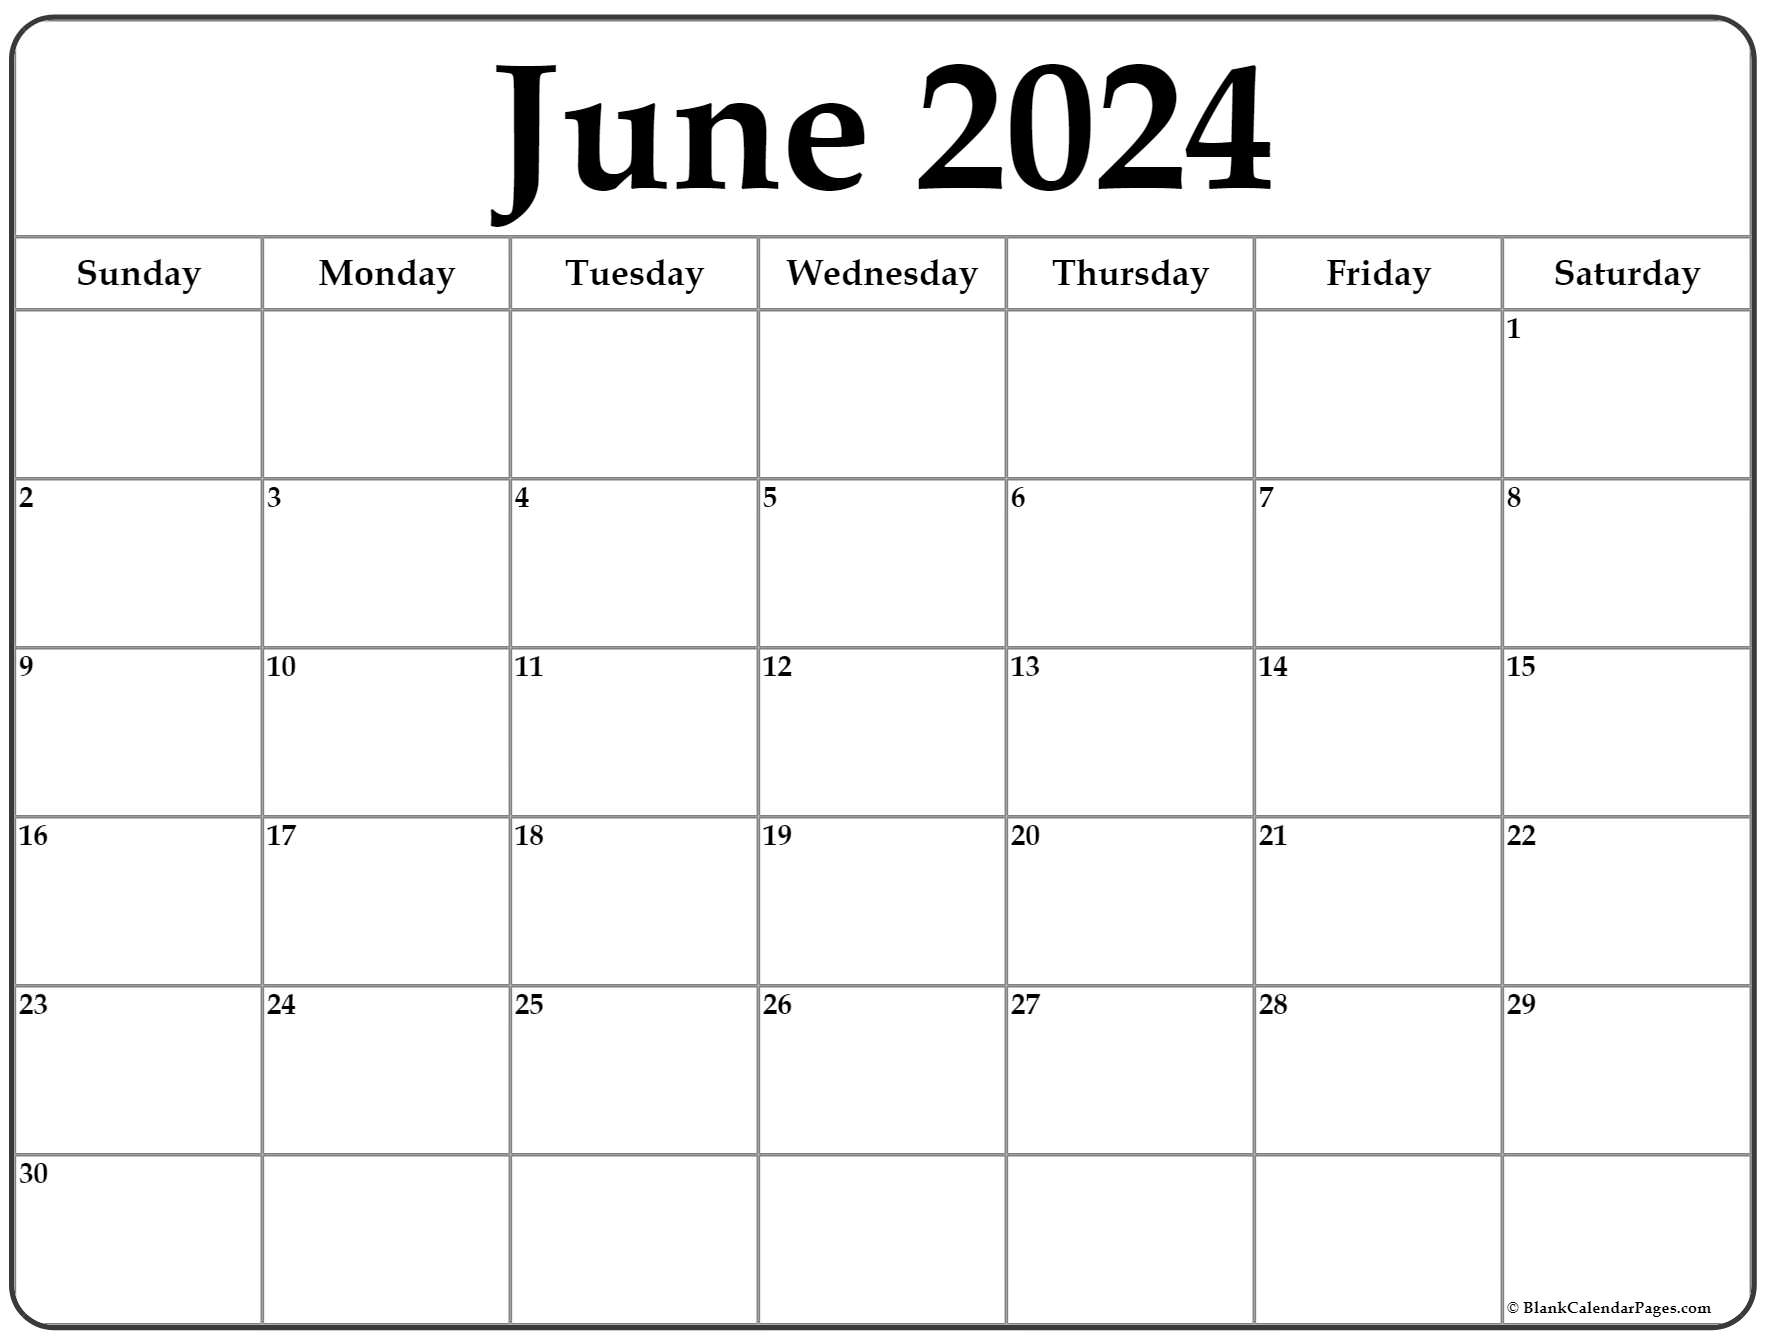 June 2024 Calendar Printable Pdf